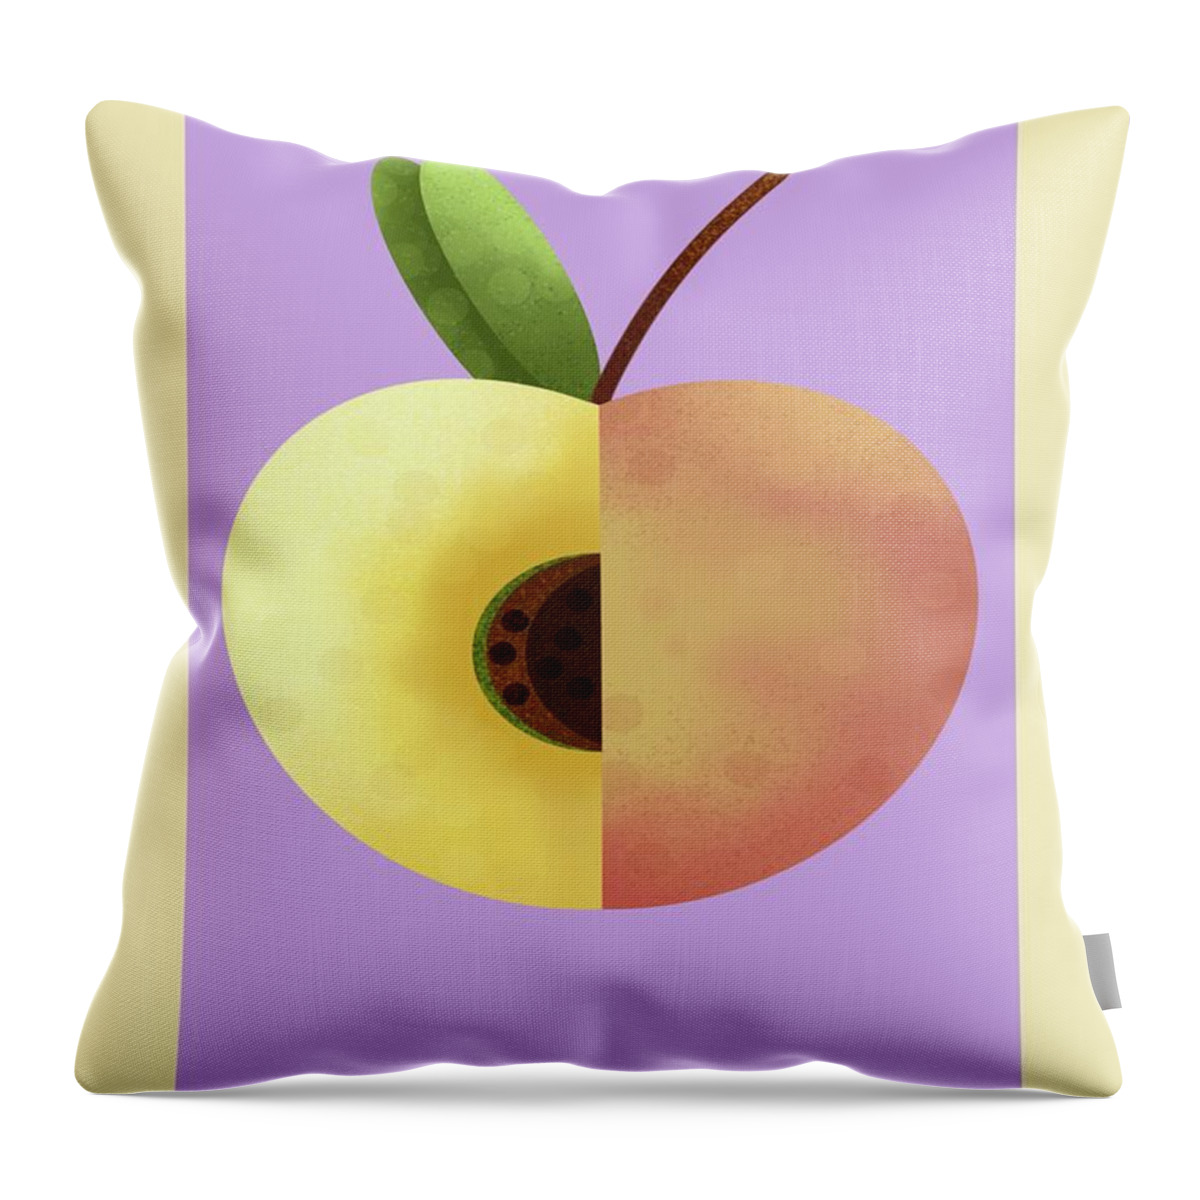 Peach Throw Pillow featuring the painting Peach #2 by Joe Gilronan